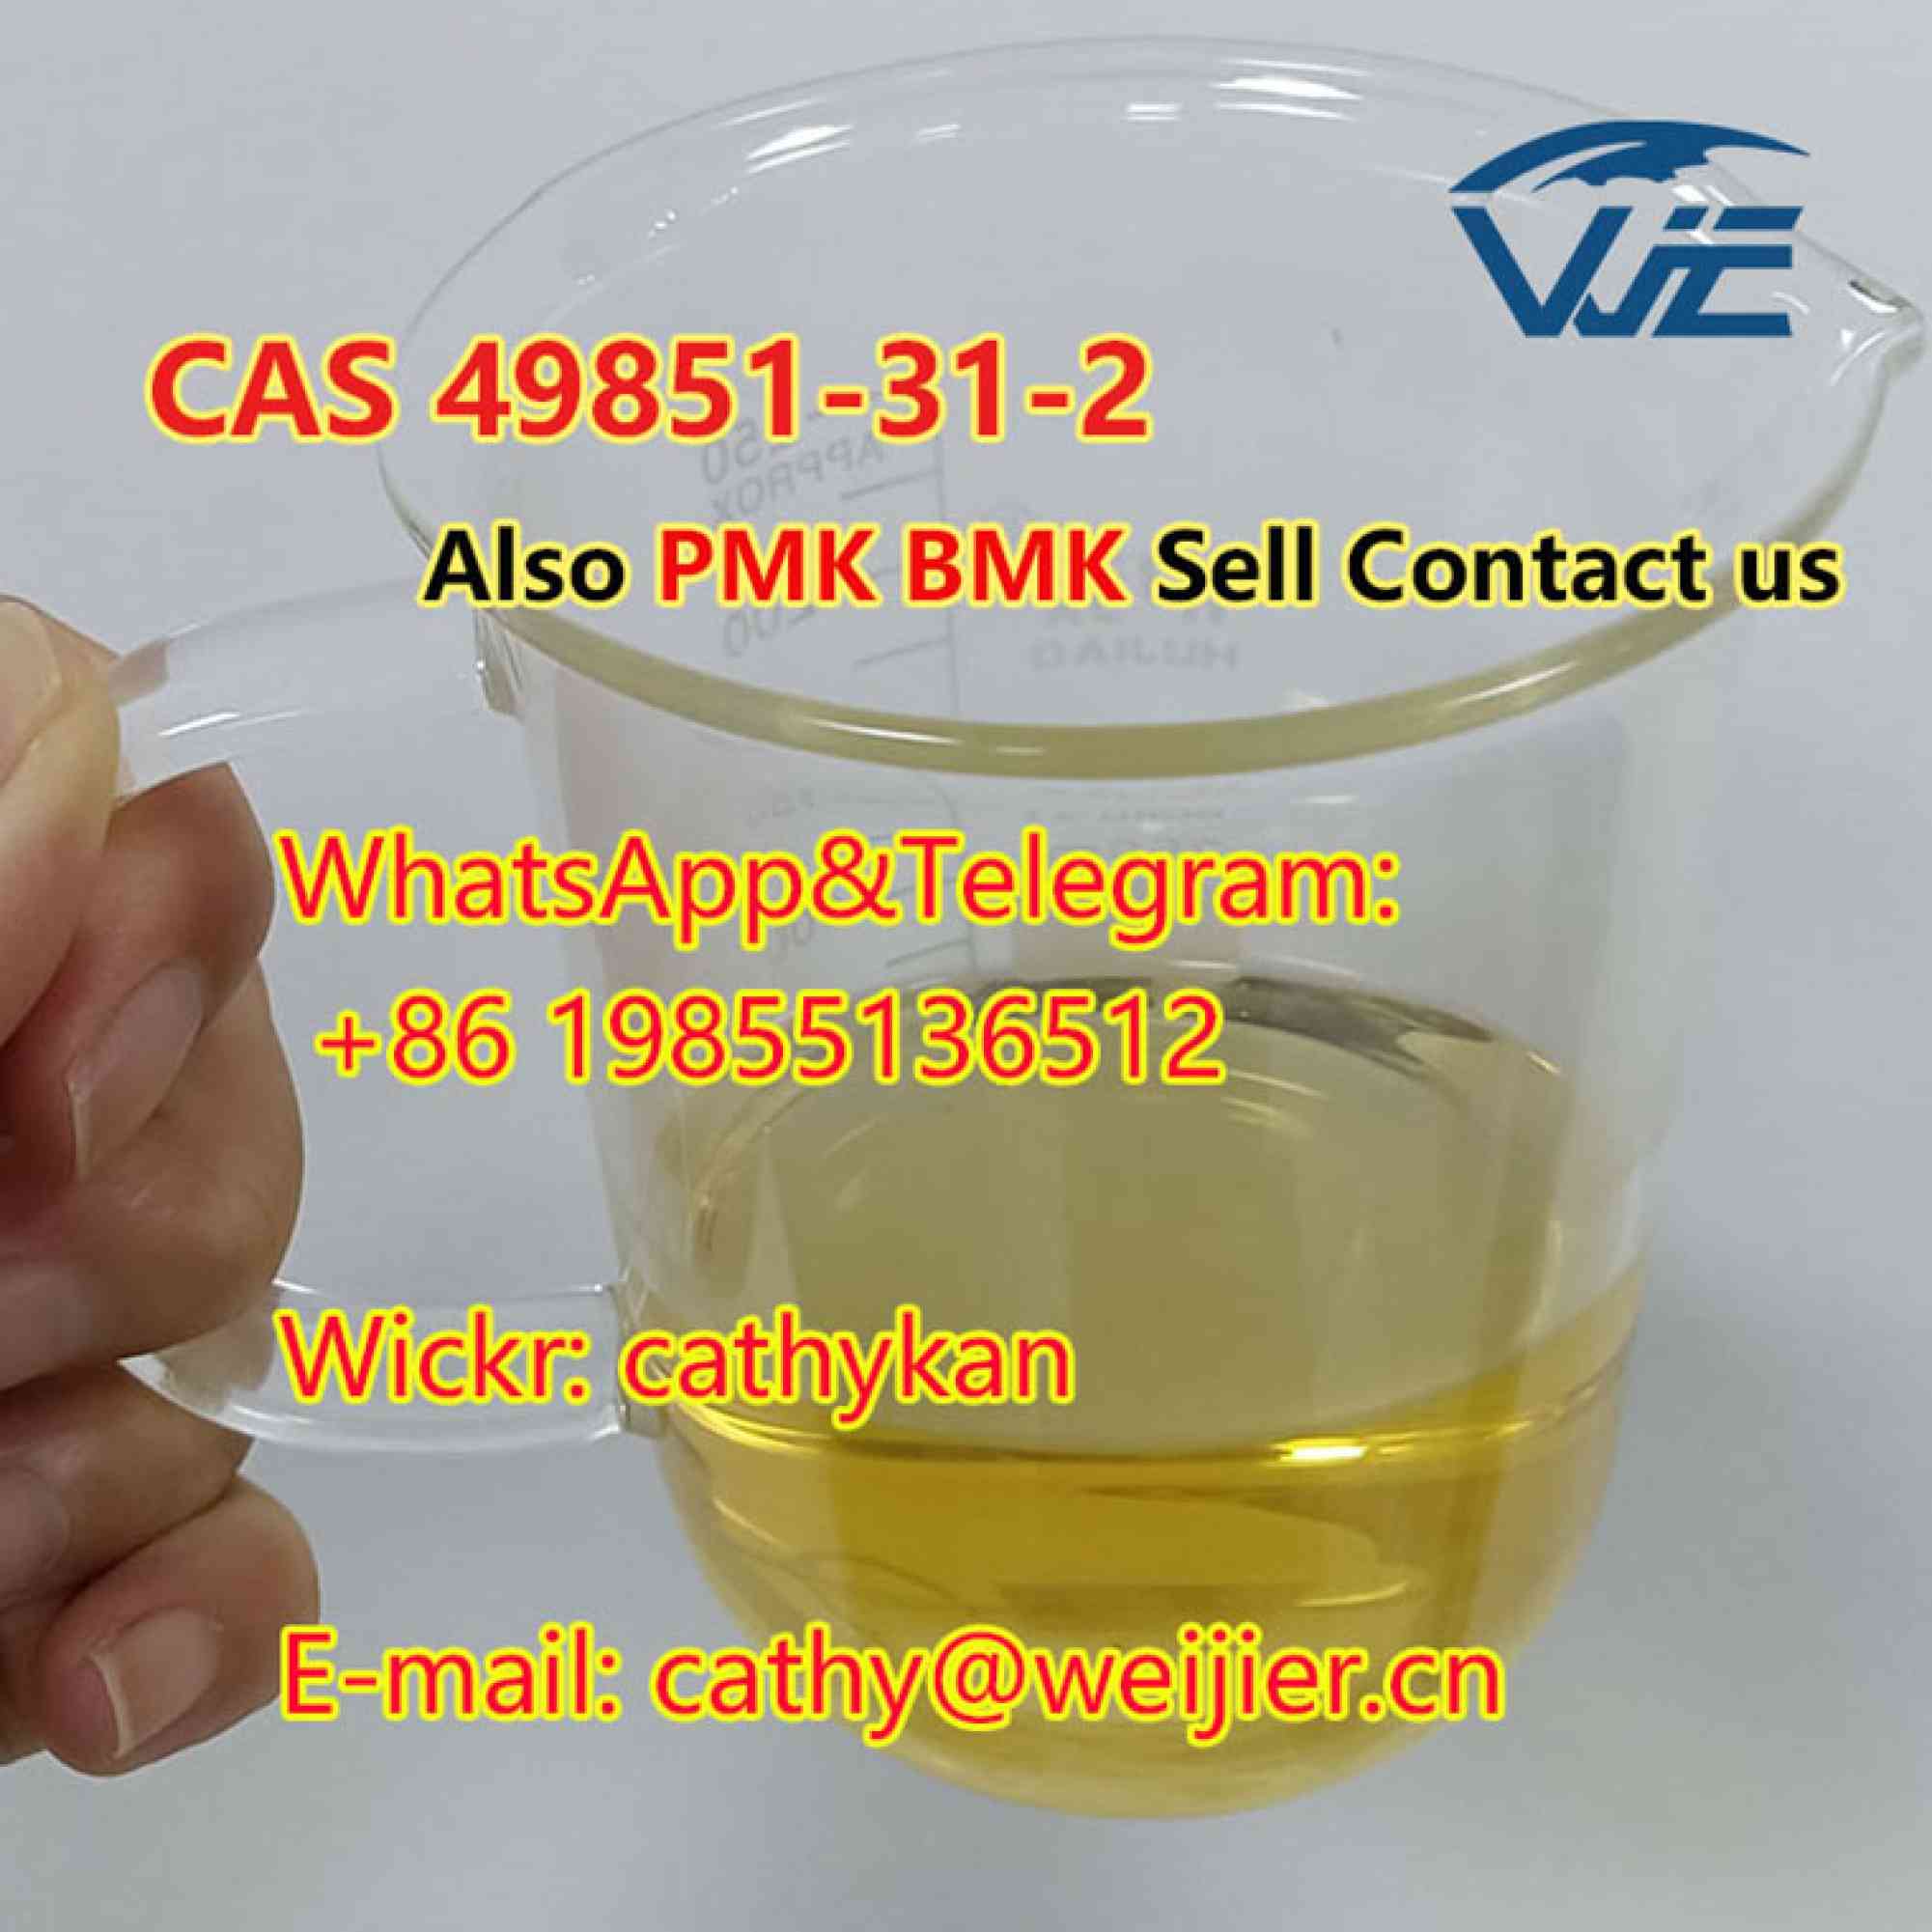 CAS 49851-31-2 High Quality BMK PMK Oil en anuncio clasificado